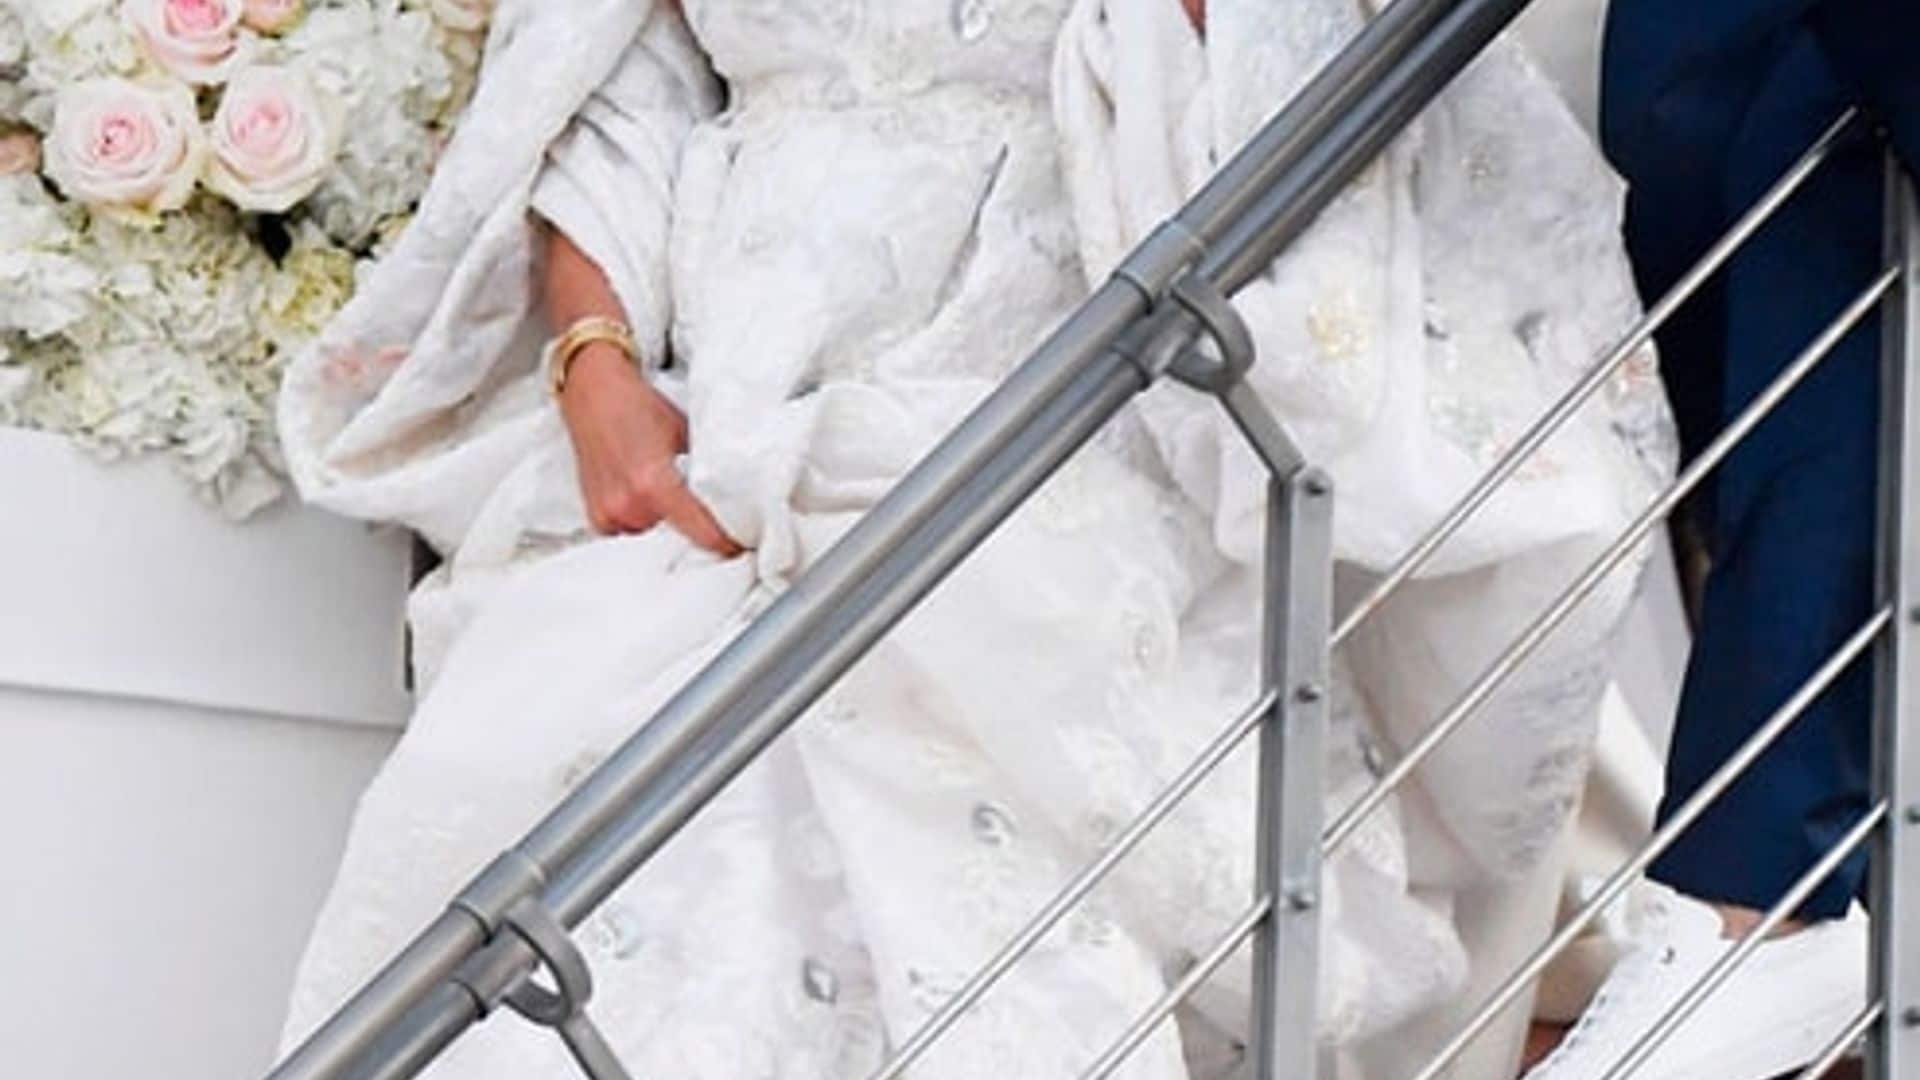 Heidi Klum weds Tom Kaulitz in Capri